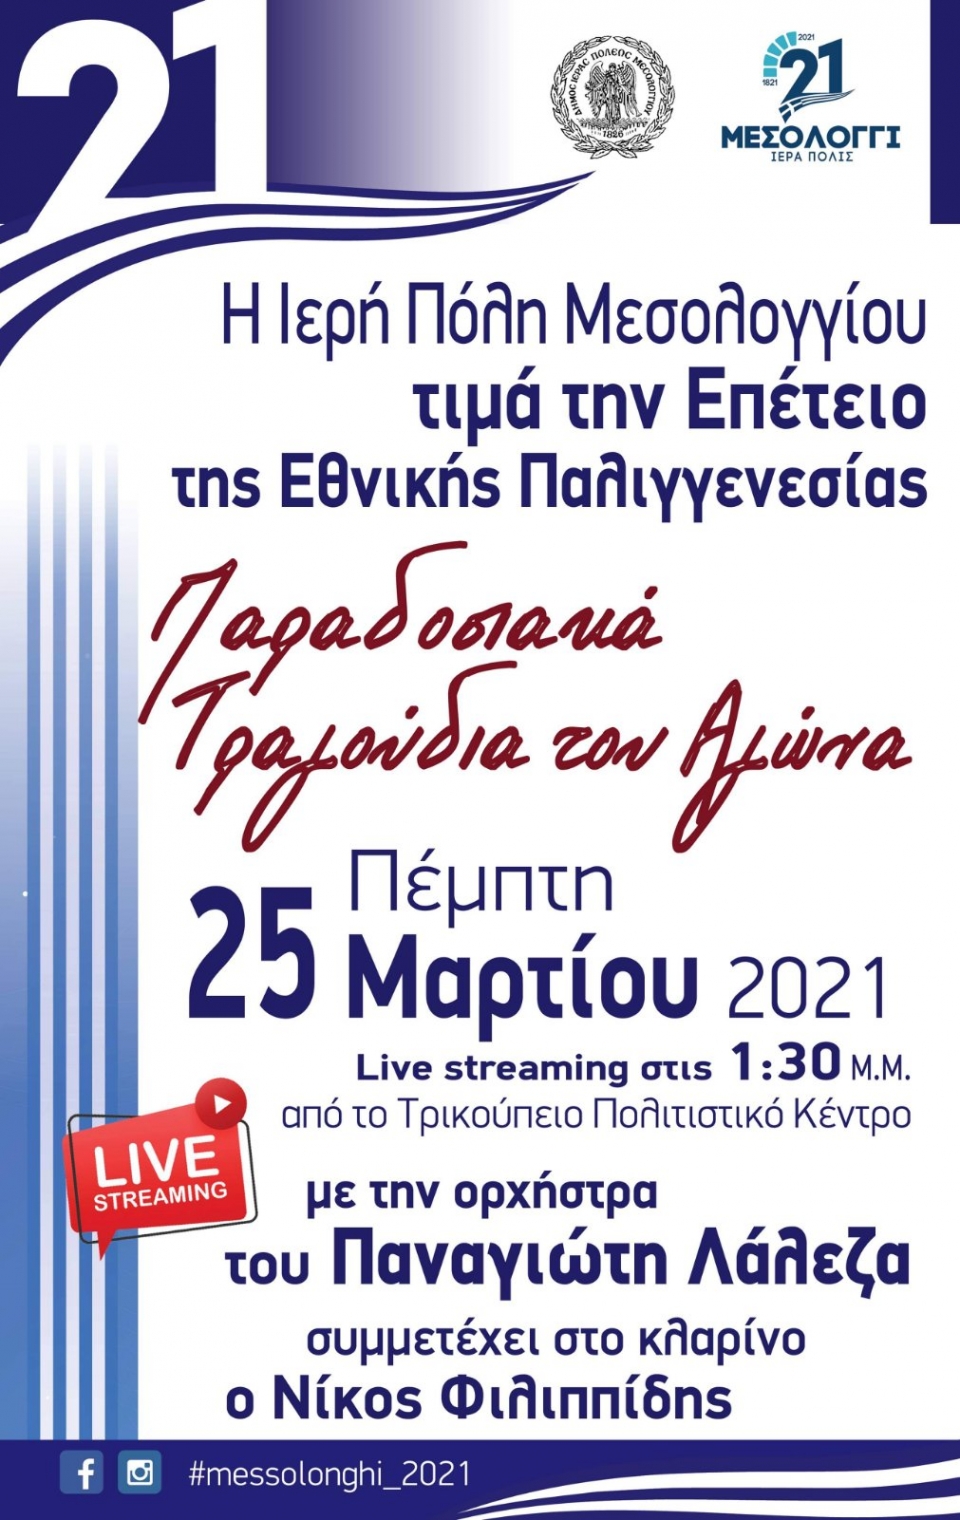 Ο Αγώνας των Ελλήνων για την  Ελευθερία μέσα από το παραδοσιακό Τραγούδι.  Διαδικτυακή εκδήλωση του Δήμου Ι.Π. Μεσολογγίου την 25η Μαρτίου (13:30)